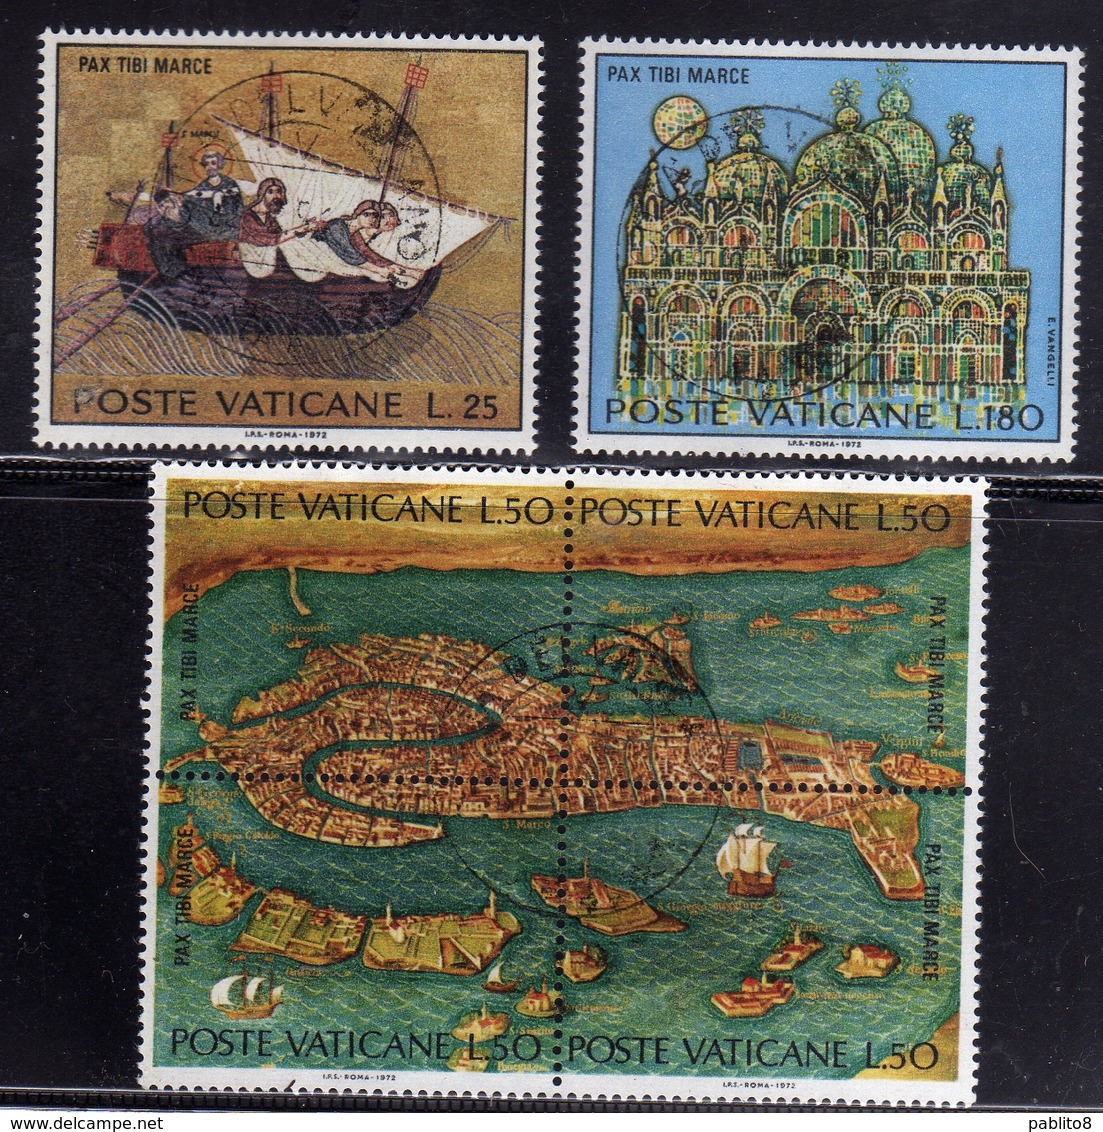 CITTÀ DEL VATICANO VATICAN VATIKAN 1972 SALVAGUARDIA DI VENEZIA SAVE VENICE SERIE COMPLETA COMPLETE SET USATA USED OBLIT - Used Stamps